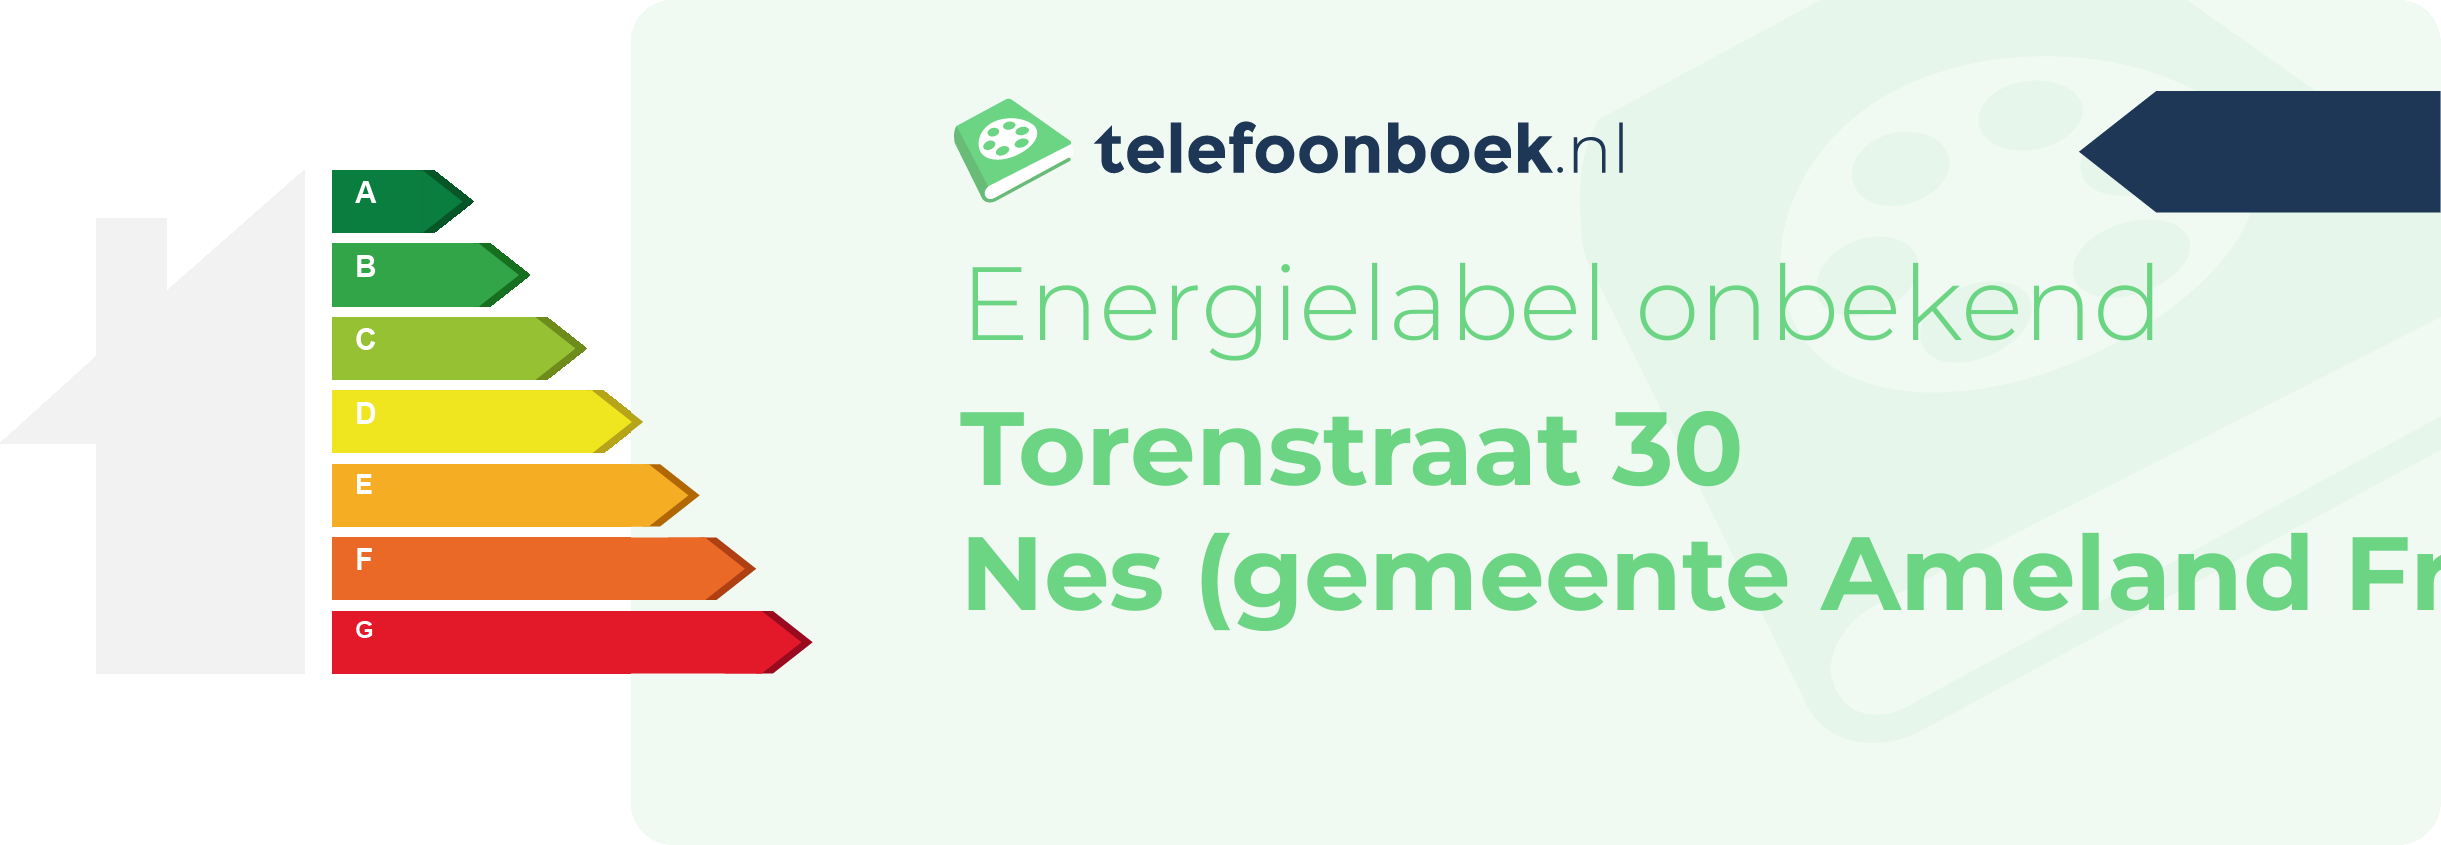 Energielabel Torenstraat 30 Nes (gemeente Ameland Friesland)